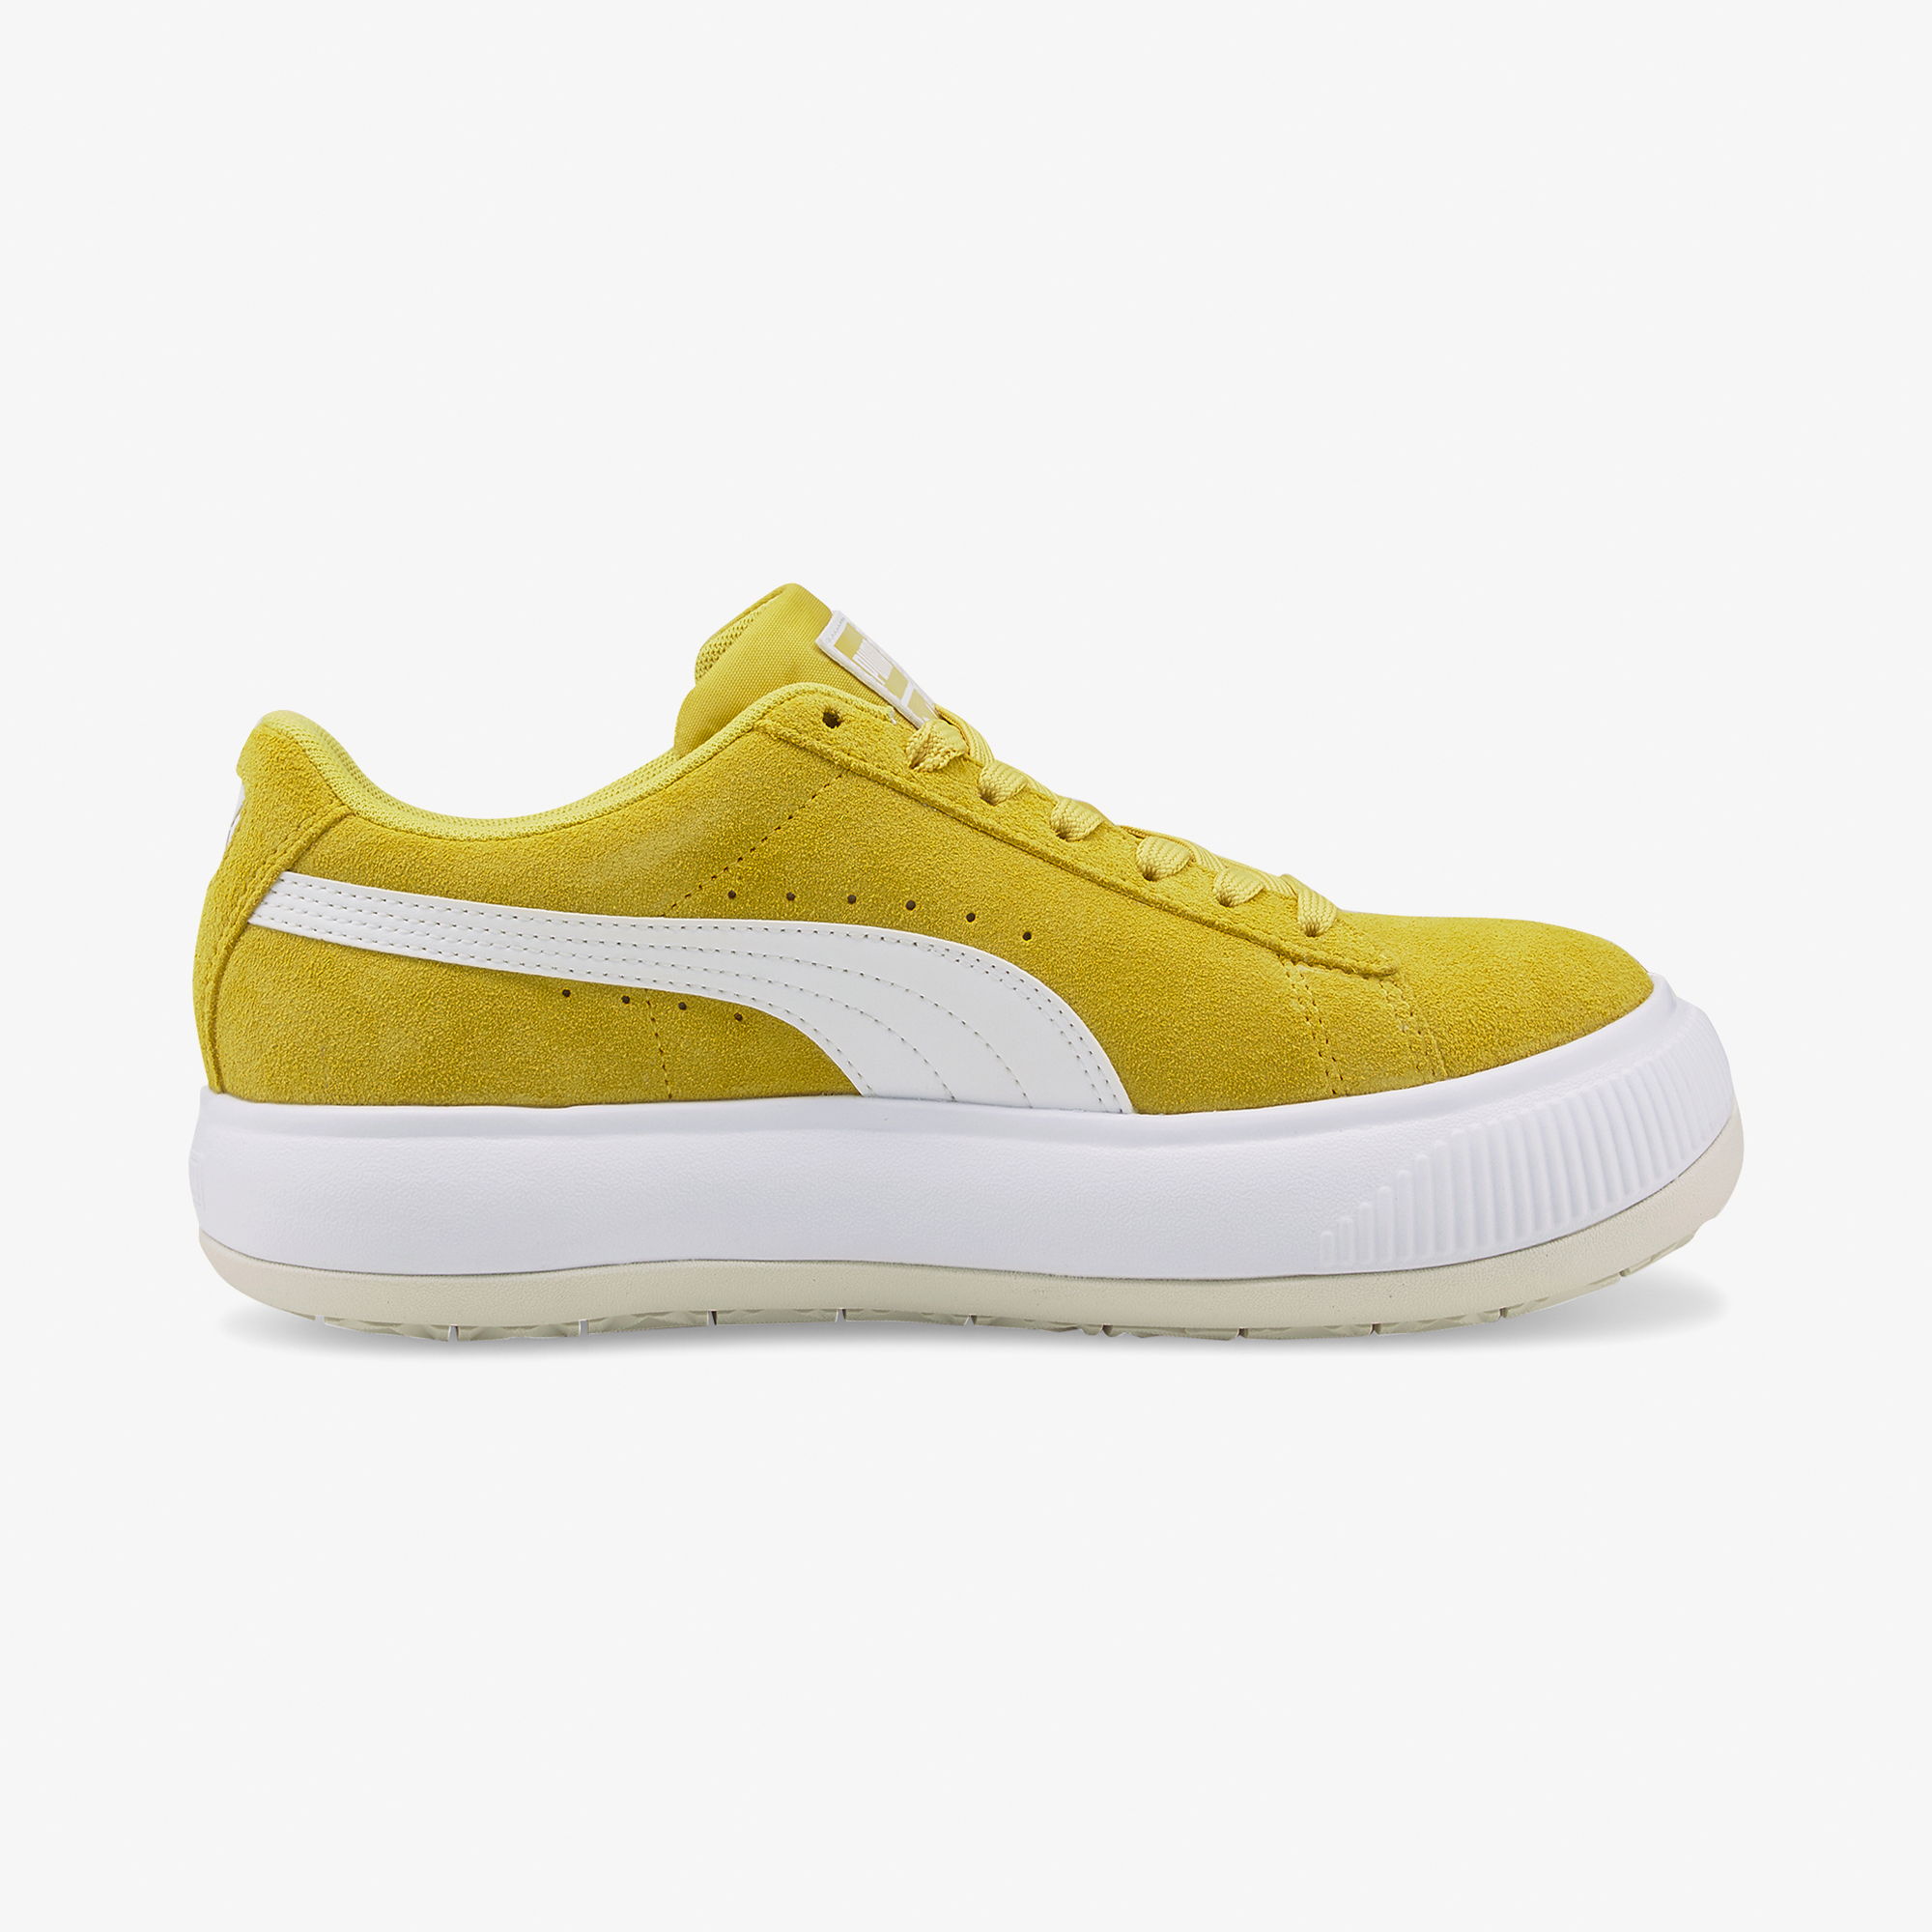 Puma Suede Mayu Kadın Sarı Spor Ayakkabı